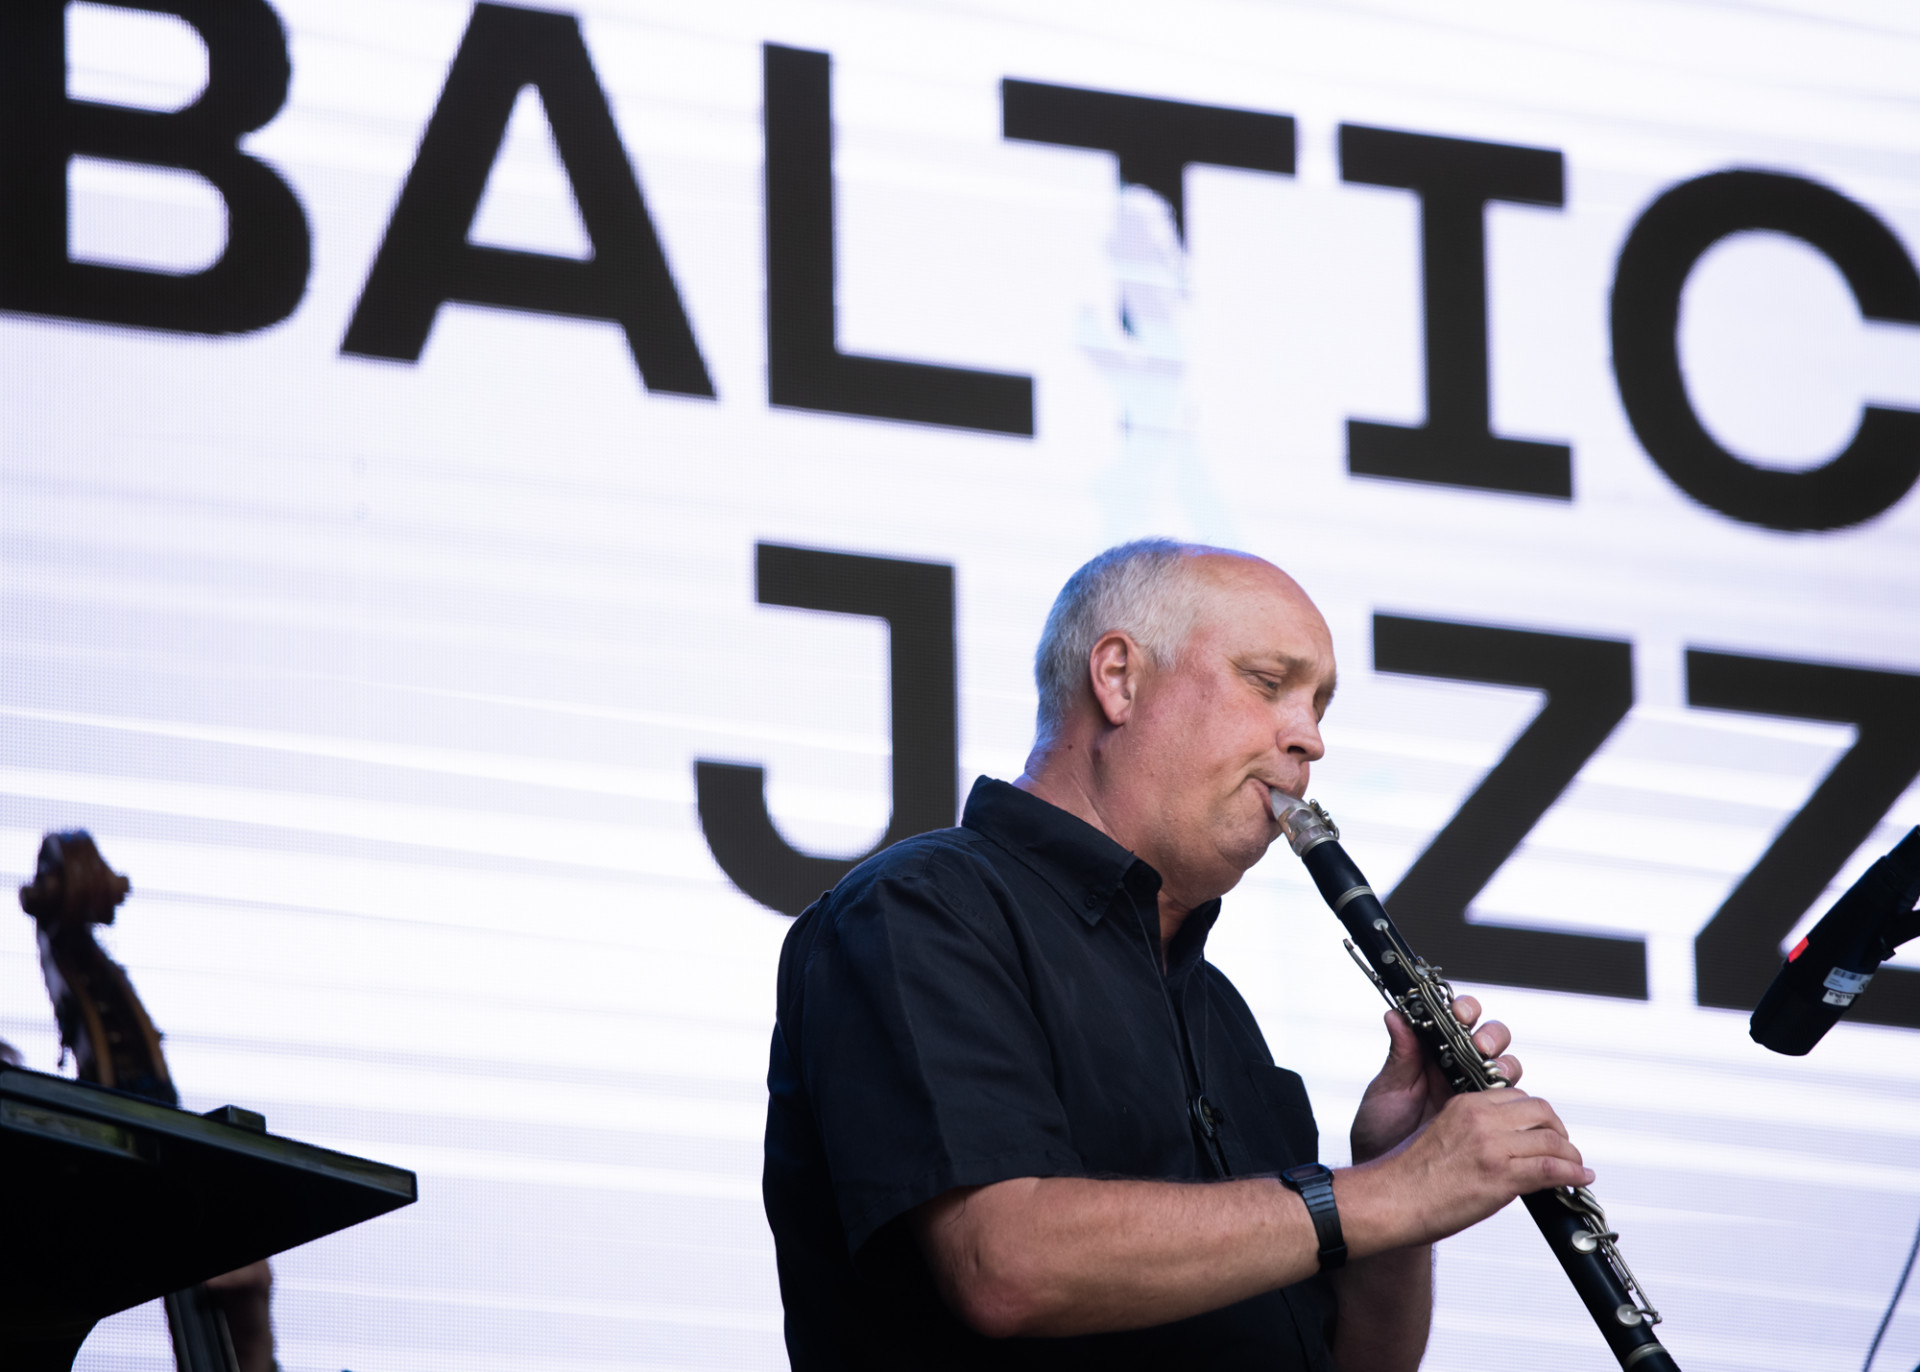 Baltic Jazz, Taalintehdas - Finland Festivals